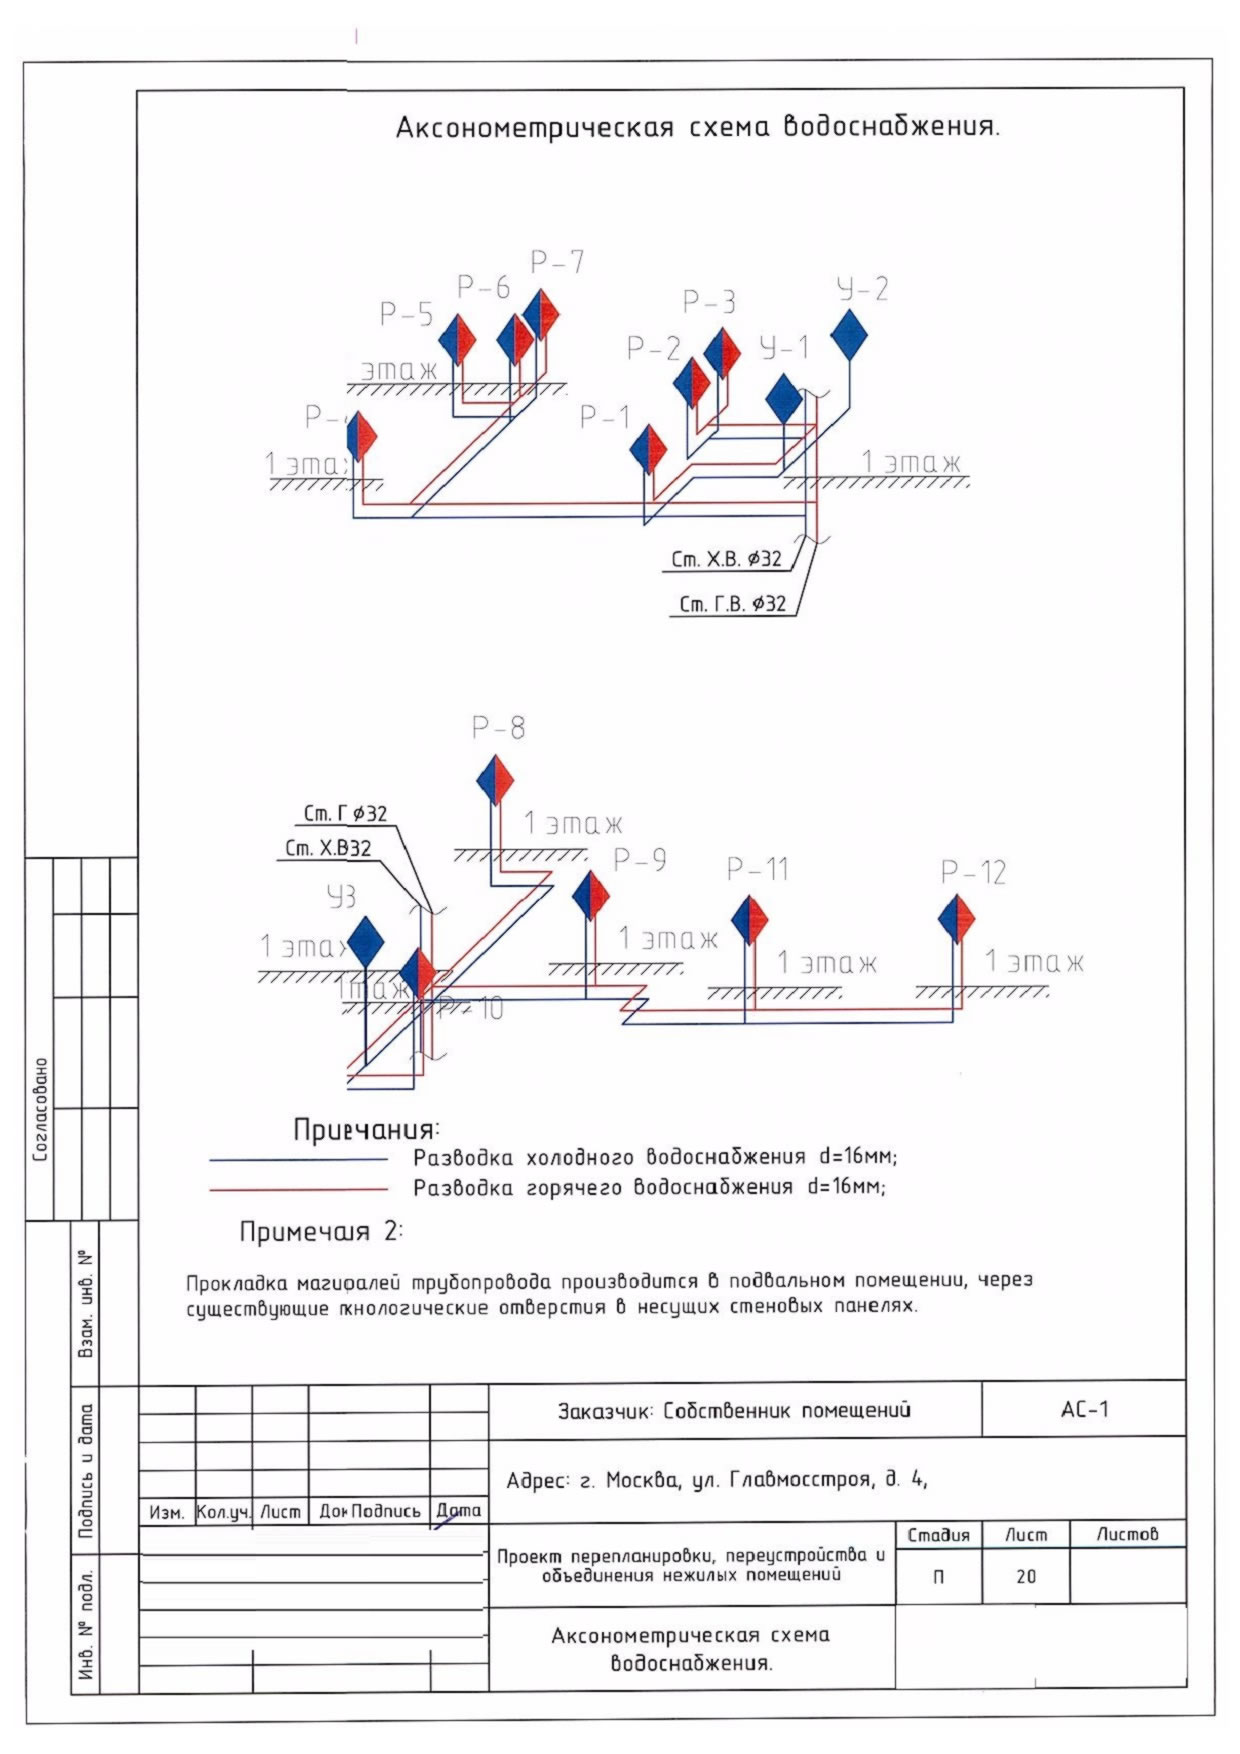 Аксонометрическая схема водоснабжения